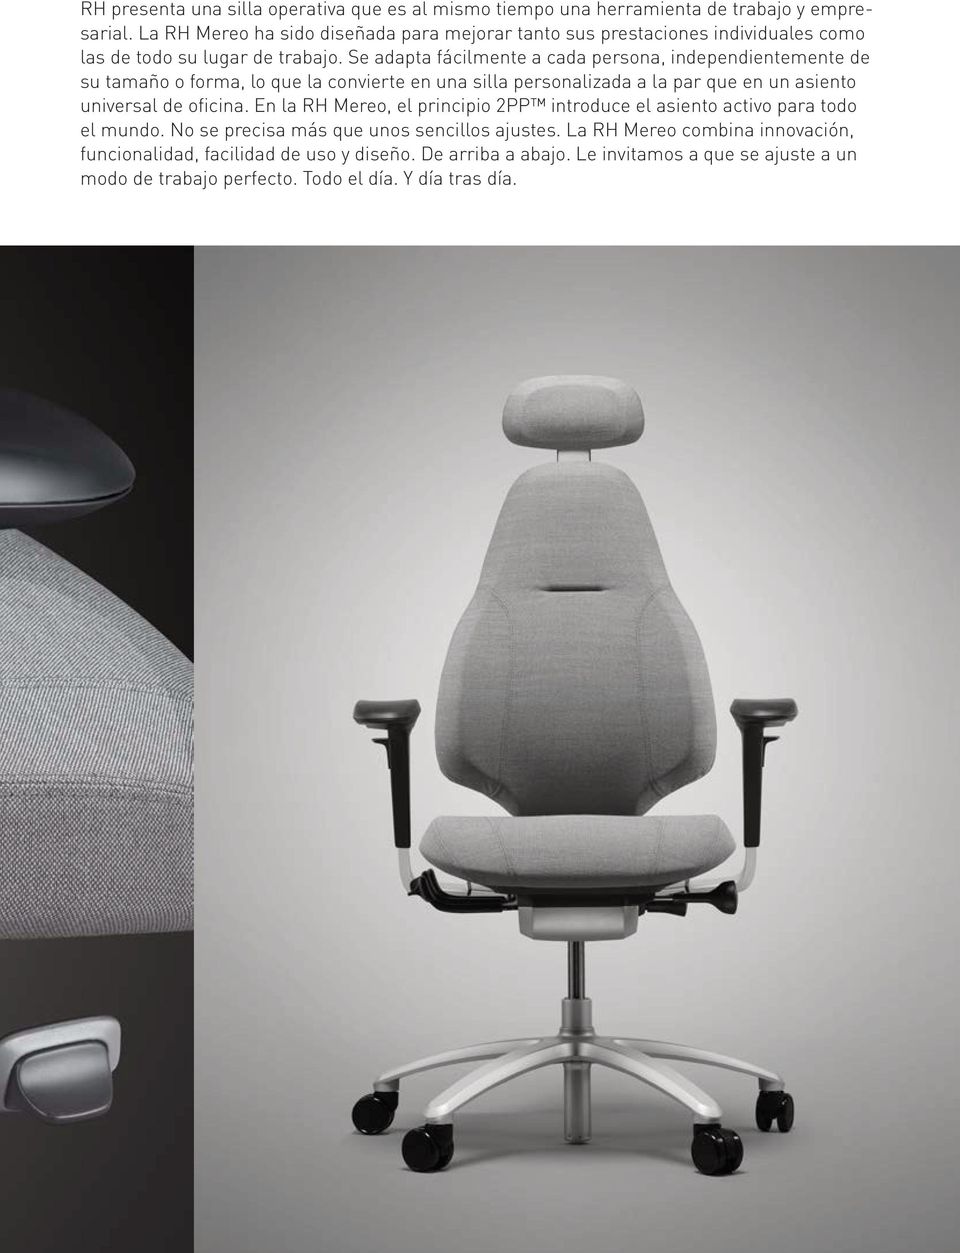 Se adapta fácilmente a cada persona, independientemente de su tamaño o forma, lo que la convierte en una silla personalizada a la par que en un asiento universal de oficina.